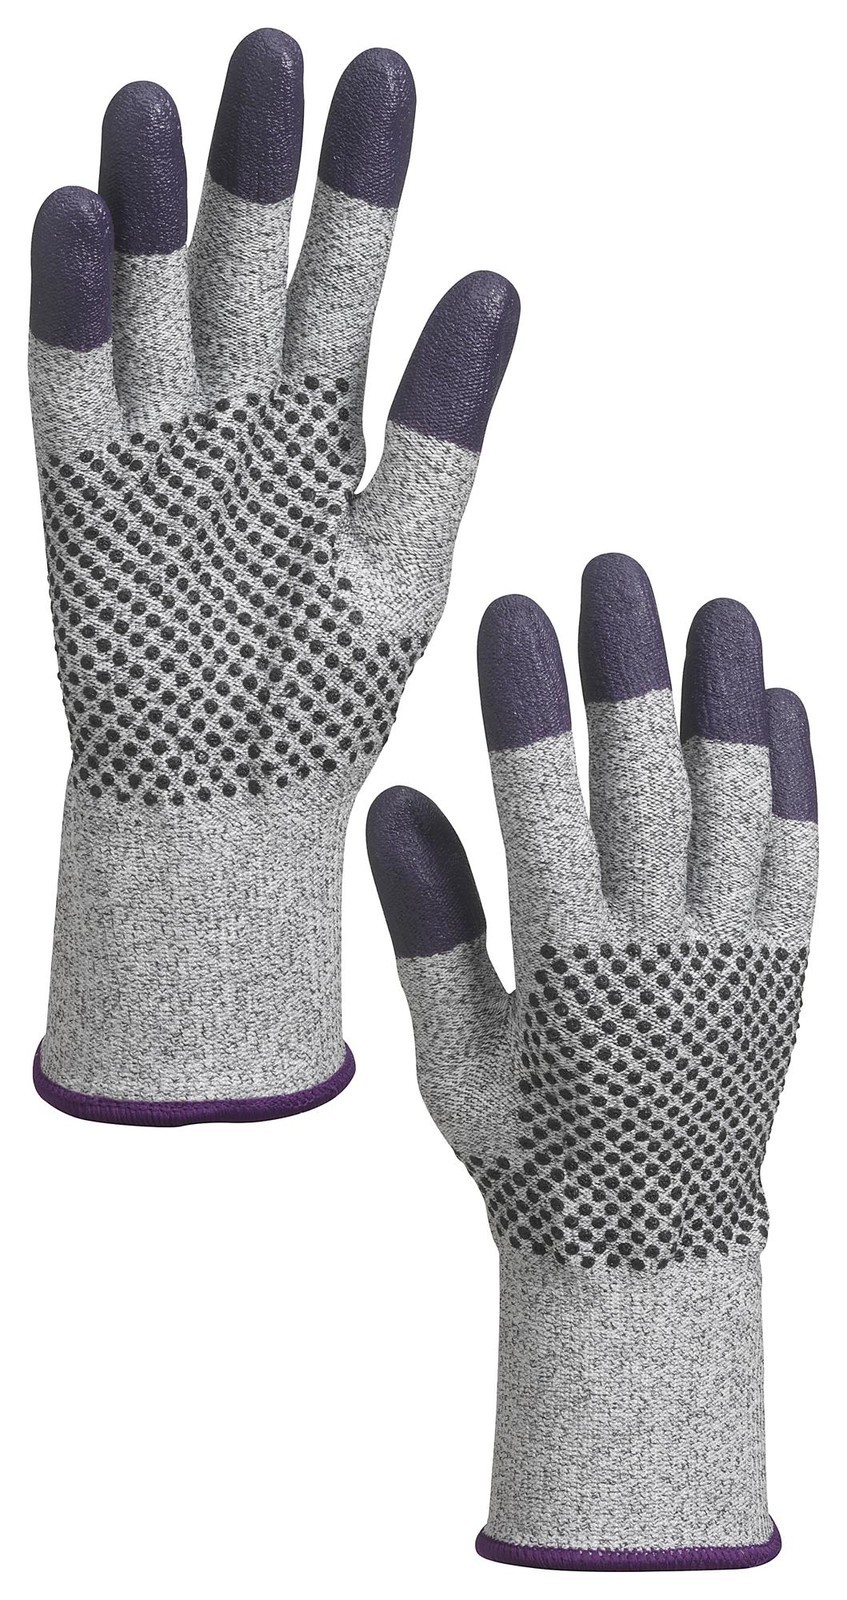 Kleenguard 97432 Glove, Knit Wrist, L, Blk/grey/purple